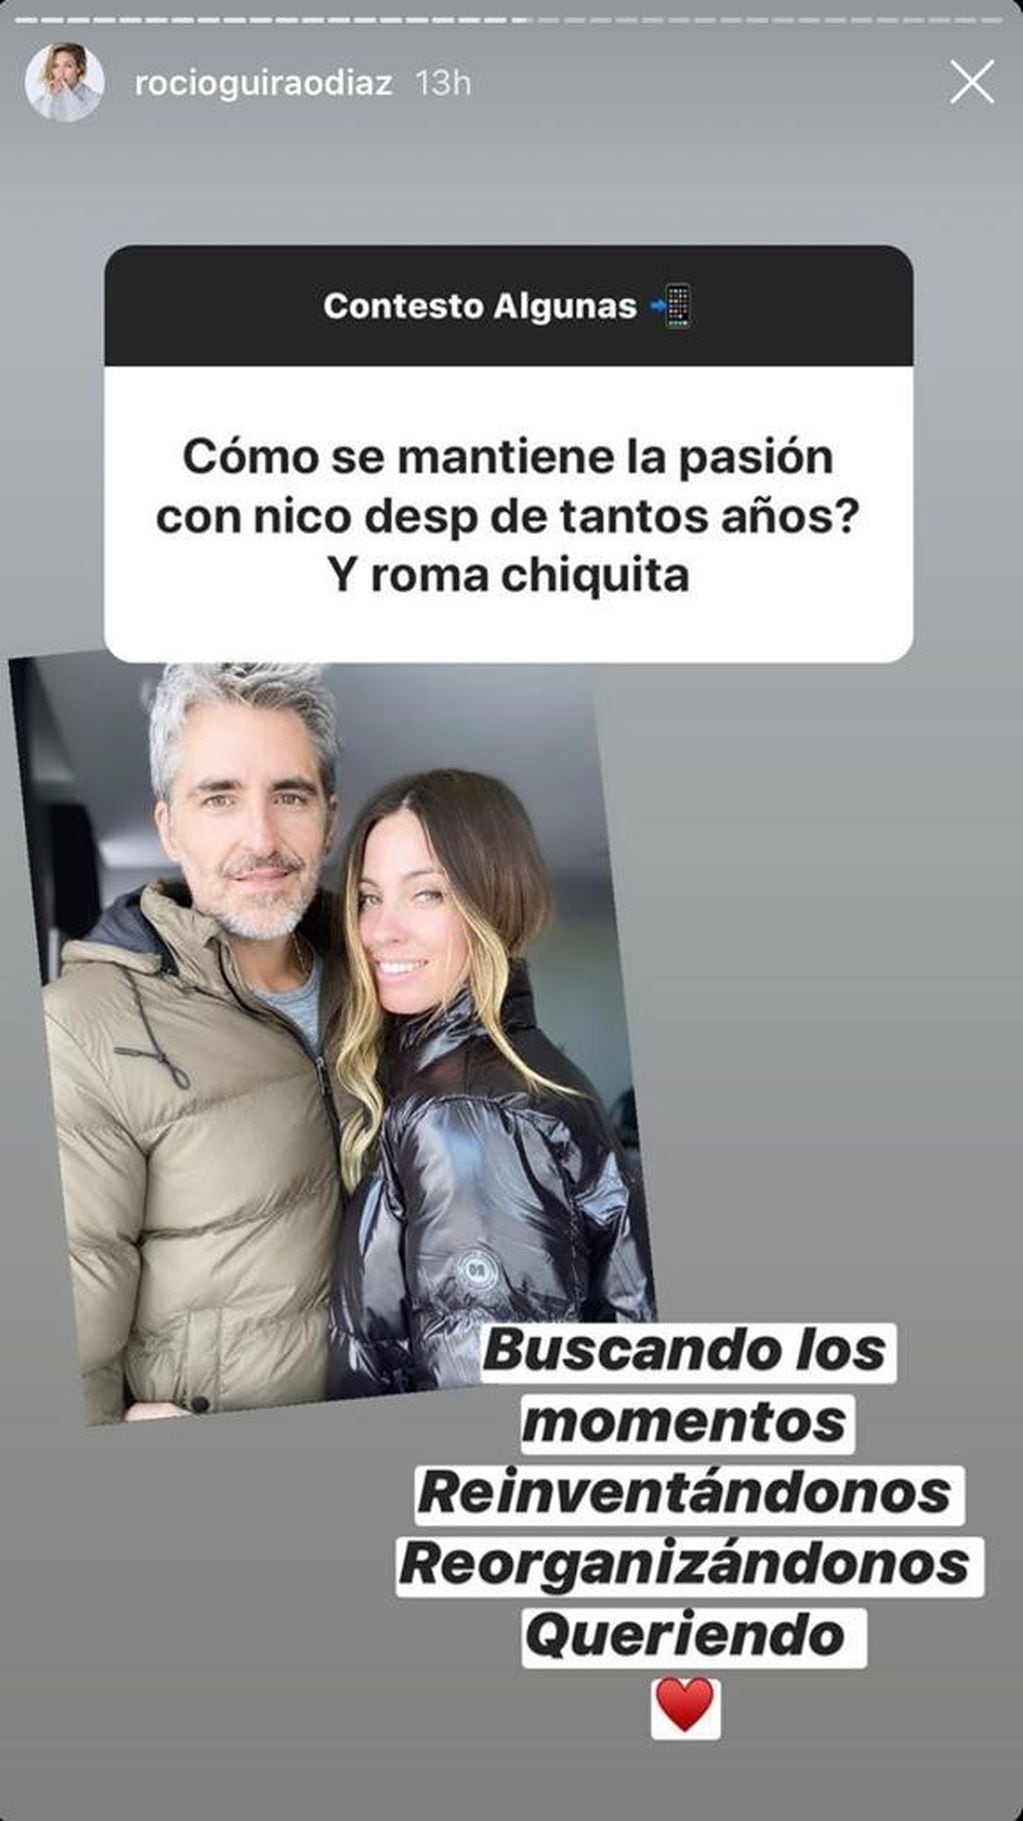 Rocio Guirao Díaz (Instagram: @rocioguiraodiaz)